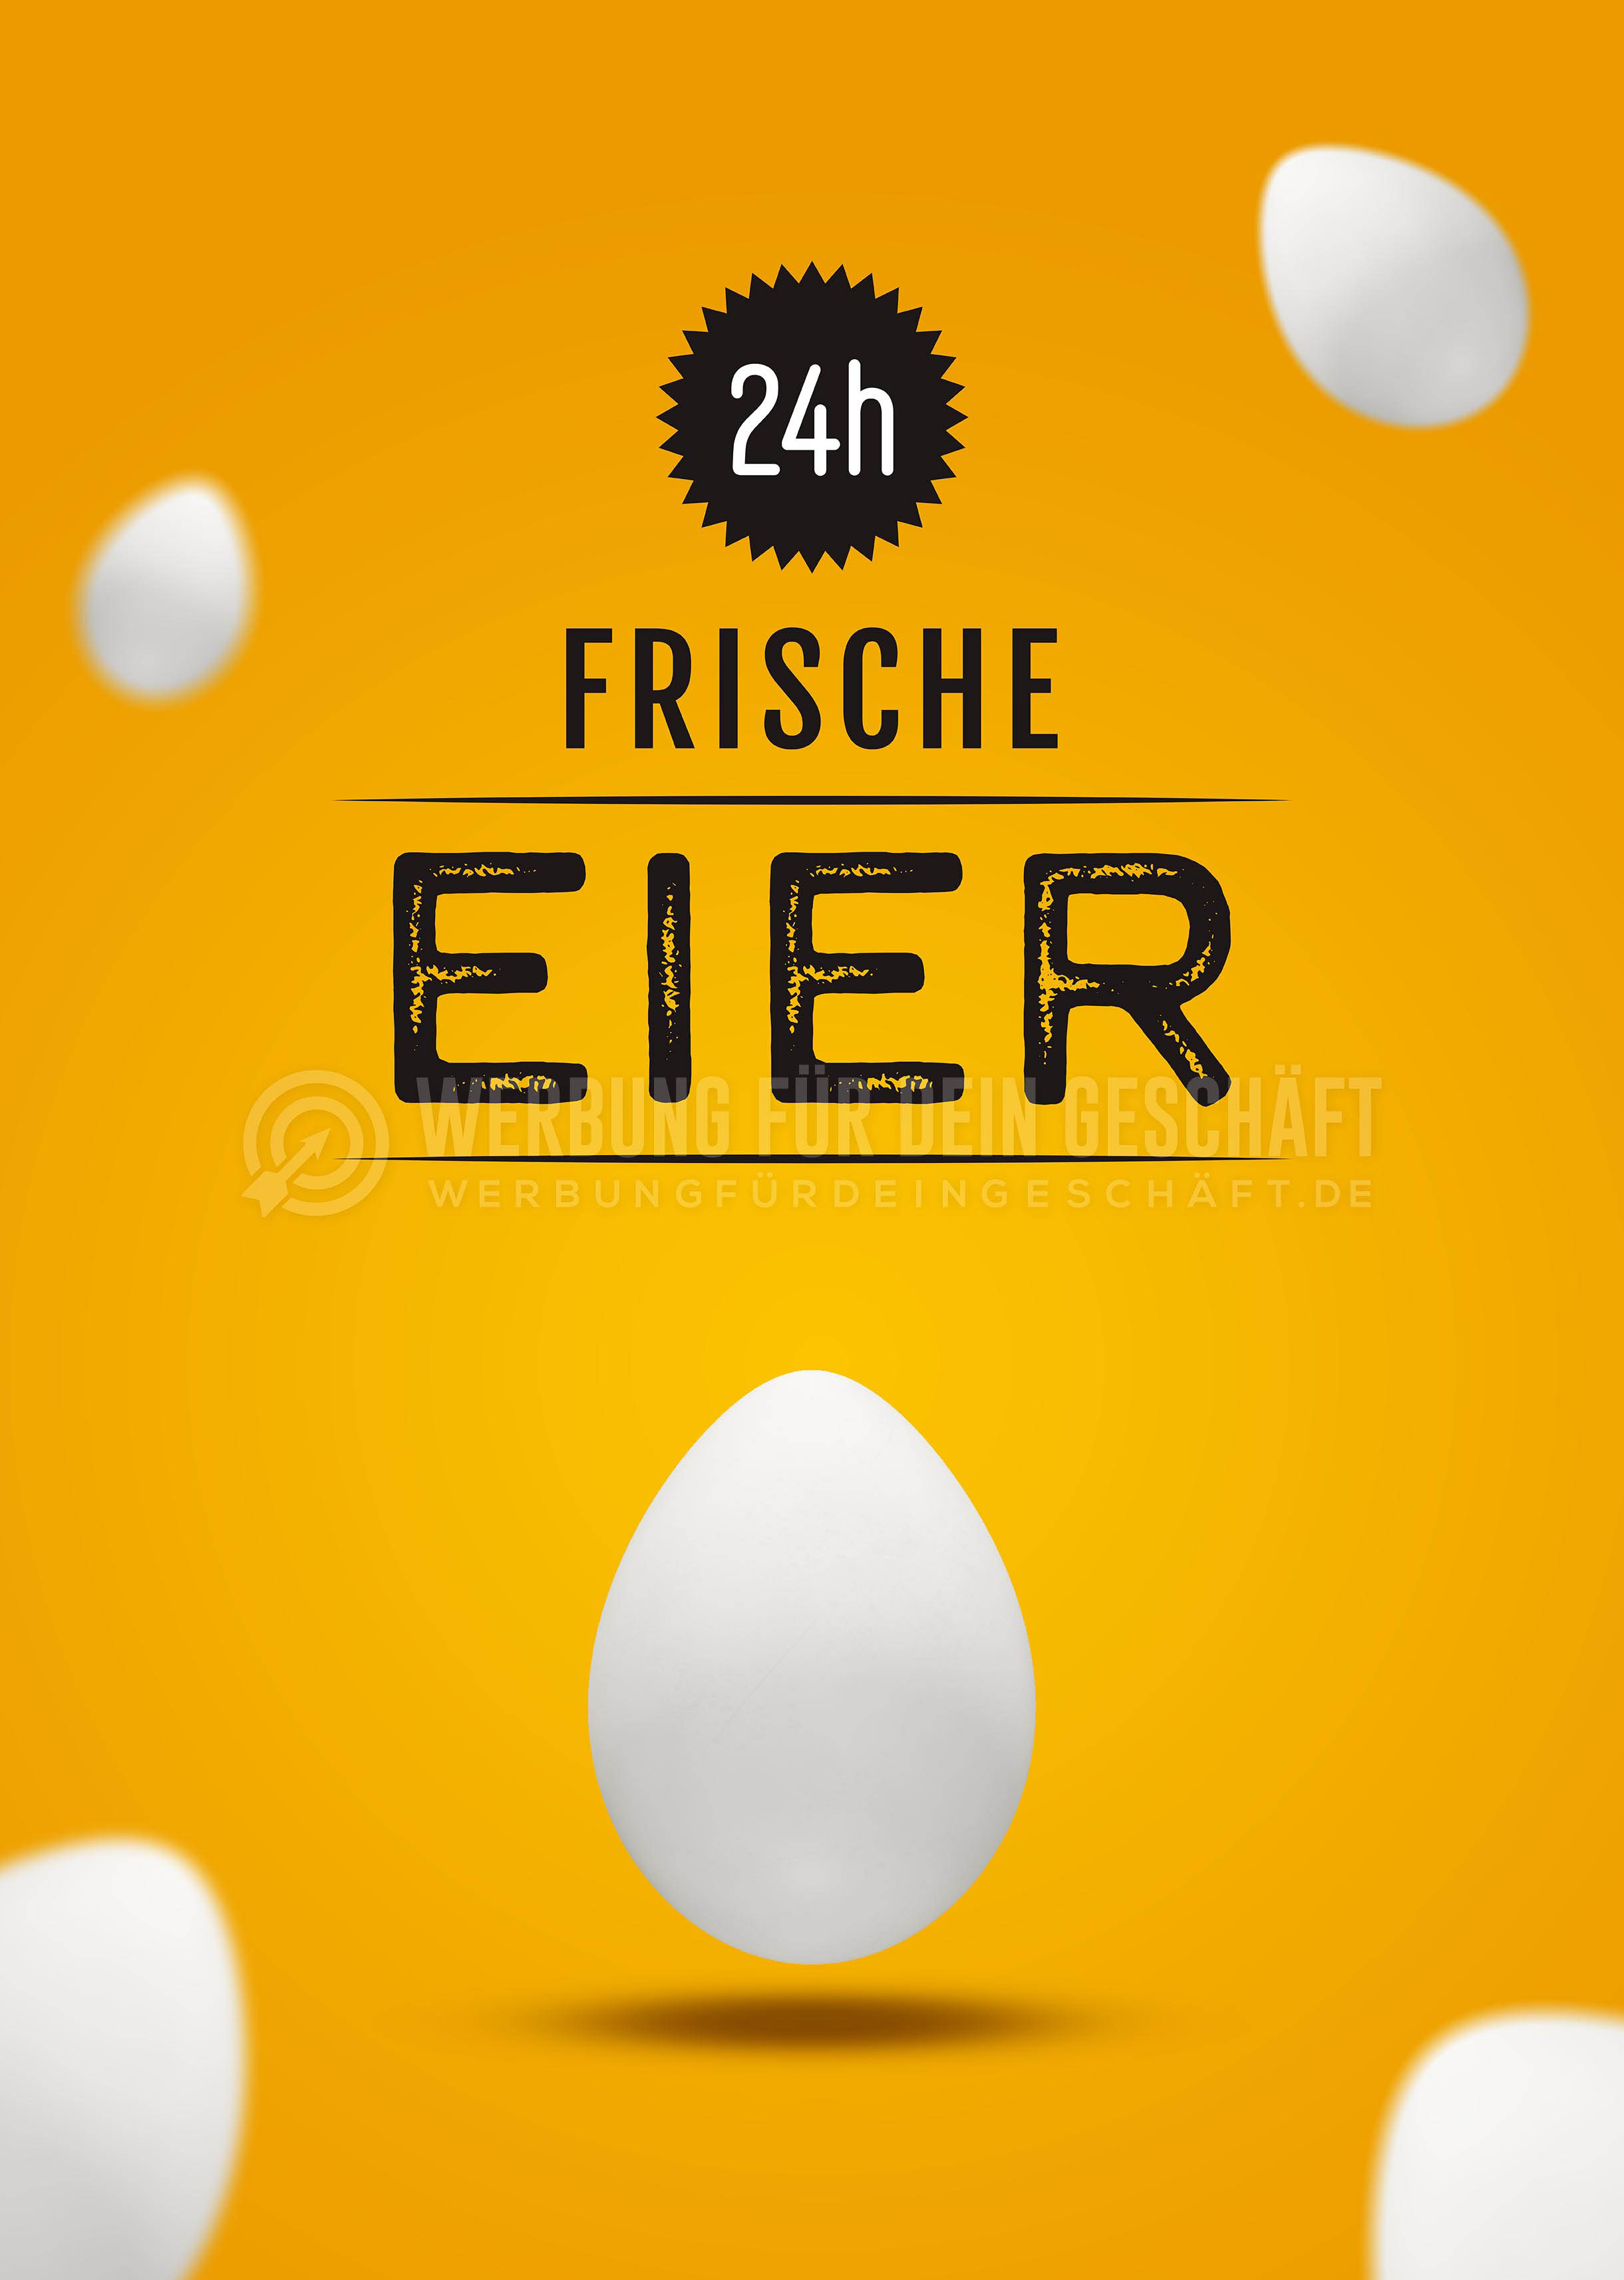 24h frische Eier Werbeplakat | Poster